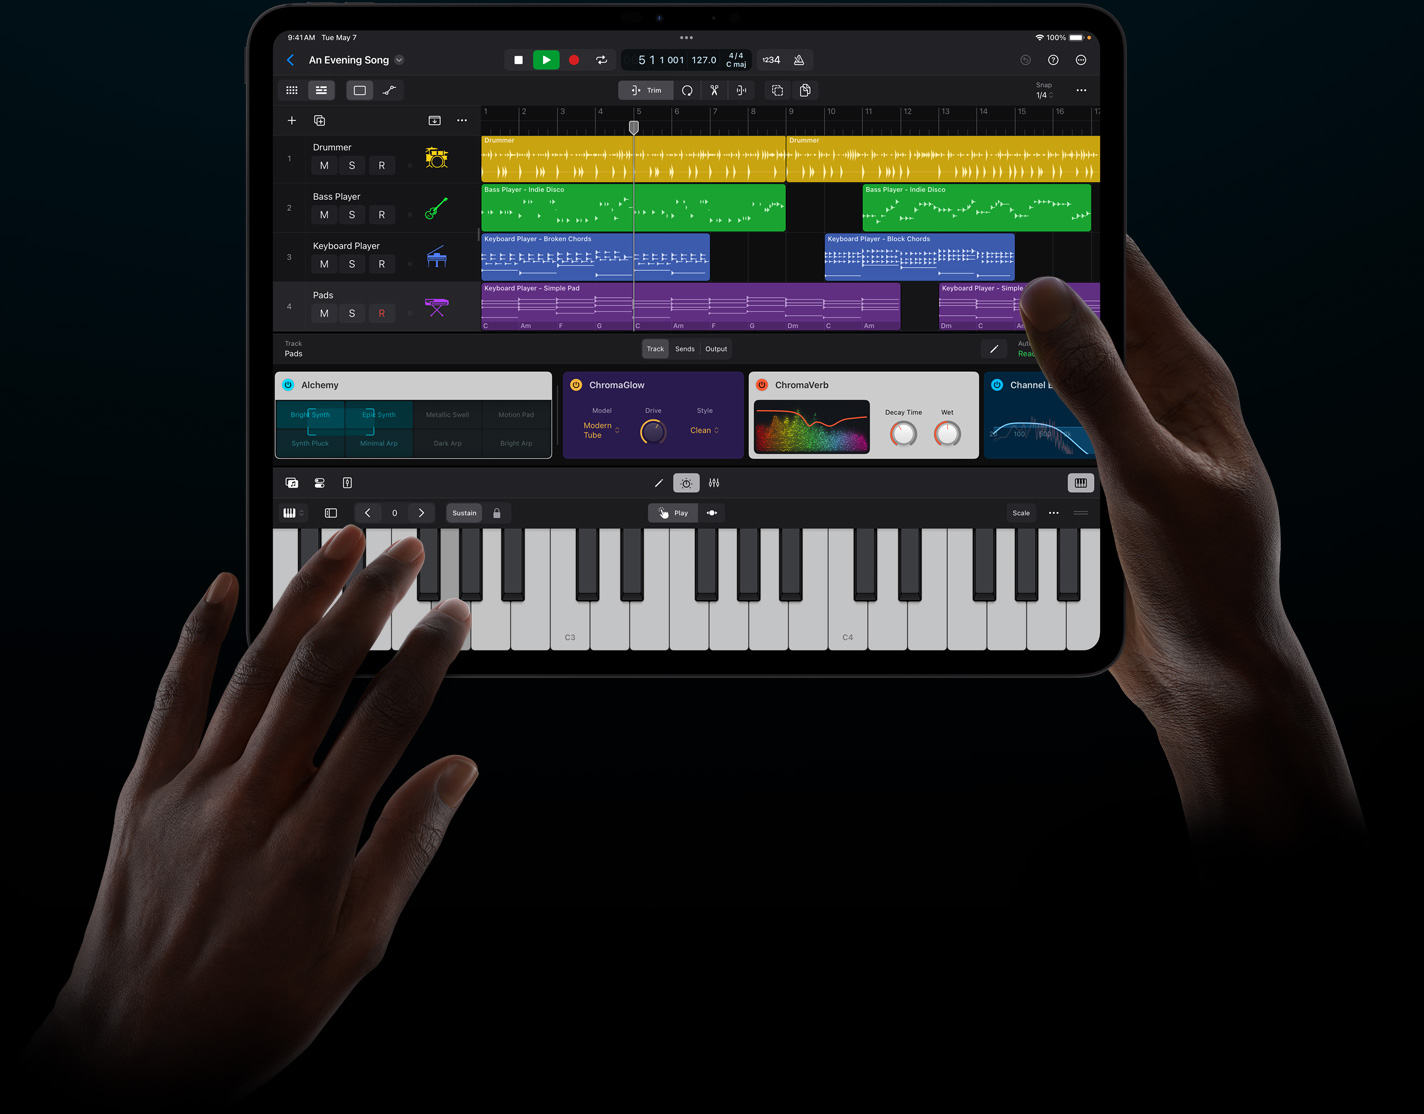 iPad Proを持った手が、iPadのためのLogic Proのバーチャル音源をタッチ操作で演奏している。